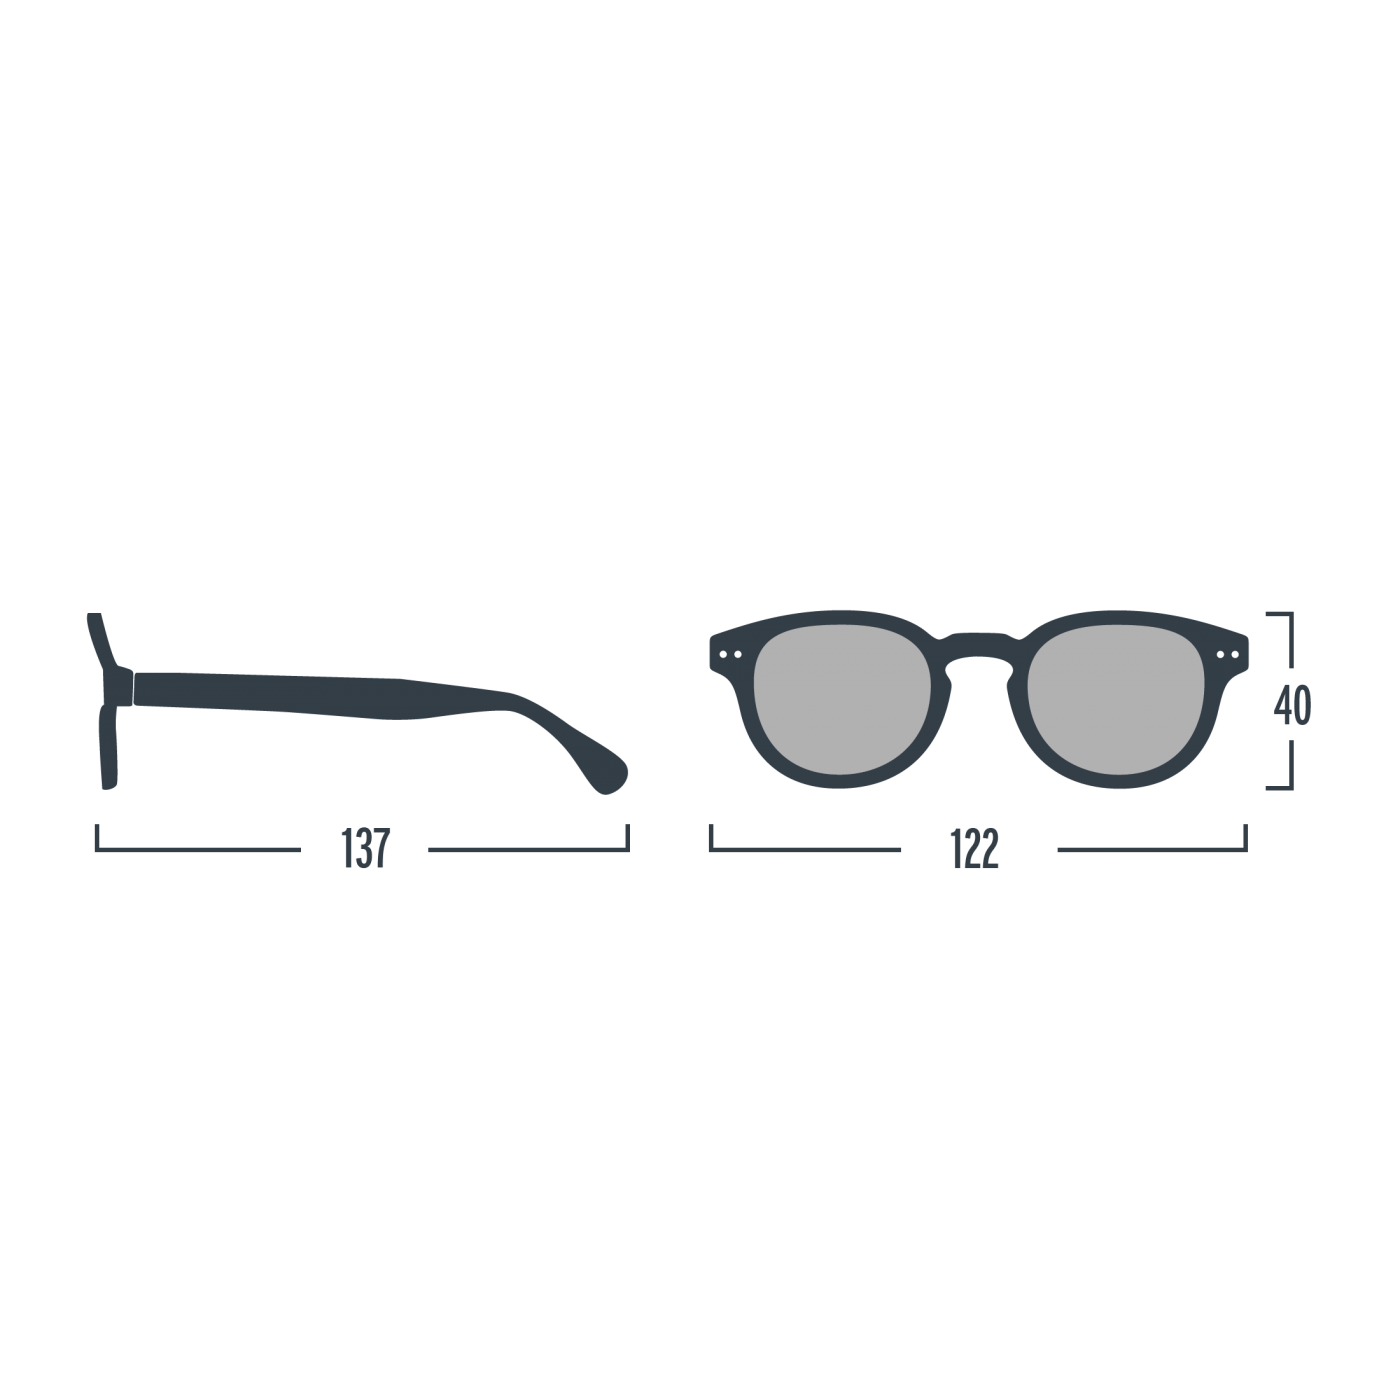 Óculos de Sol Rose #D para crianças dos 5 aos 10 anos